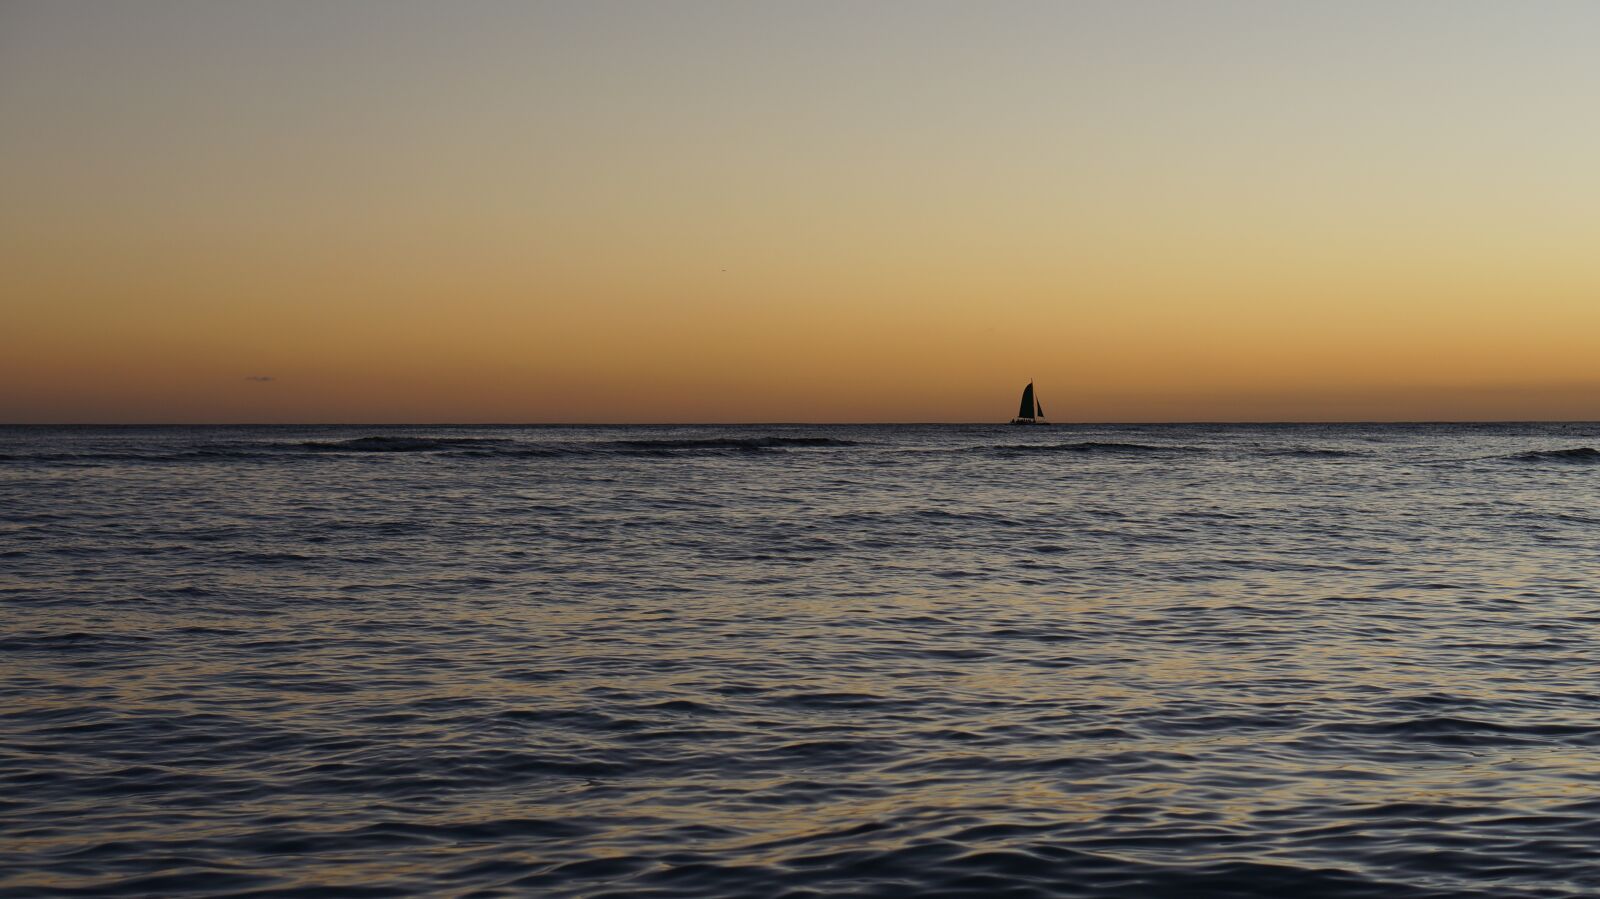 Sony Alpha NEX-5N + E 50mm F1.8 OSS sample photo. Sunset, beach, ocean photography